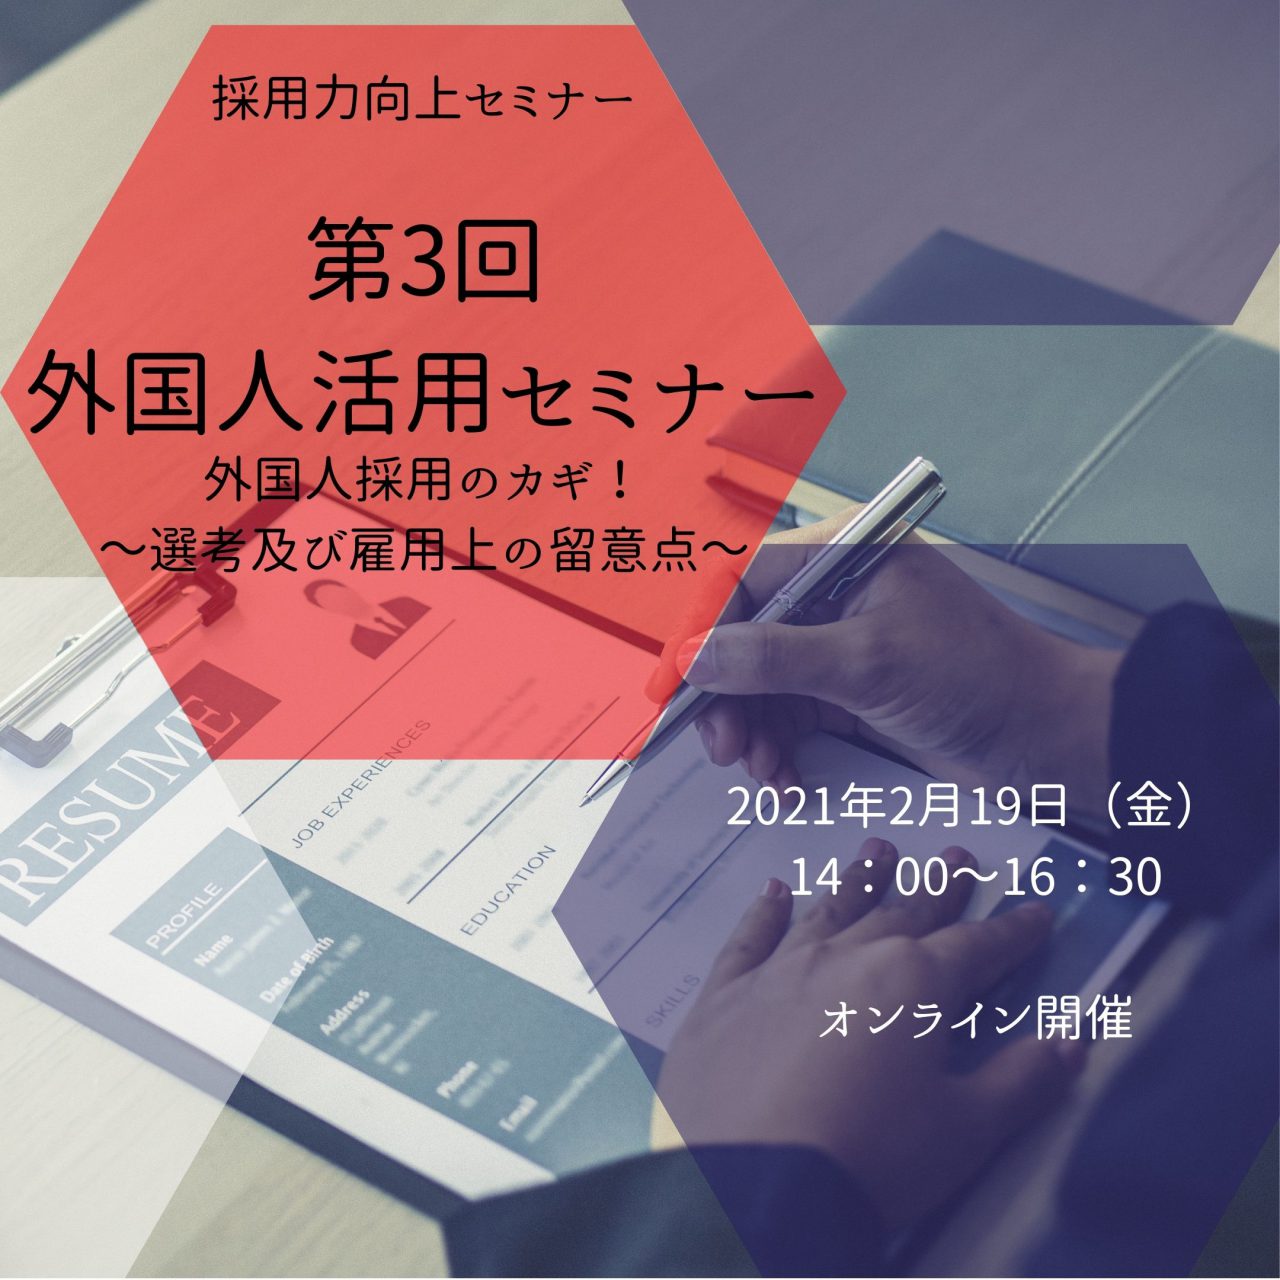 【企業向け】第3回外国人活用セミナー